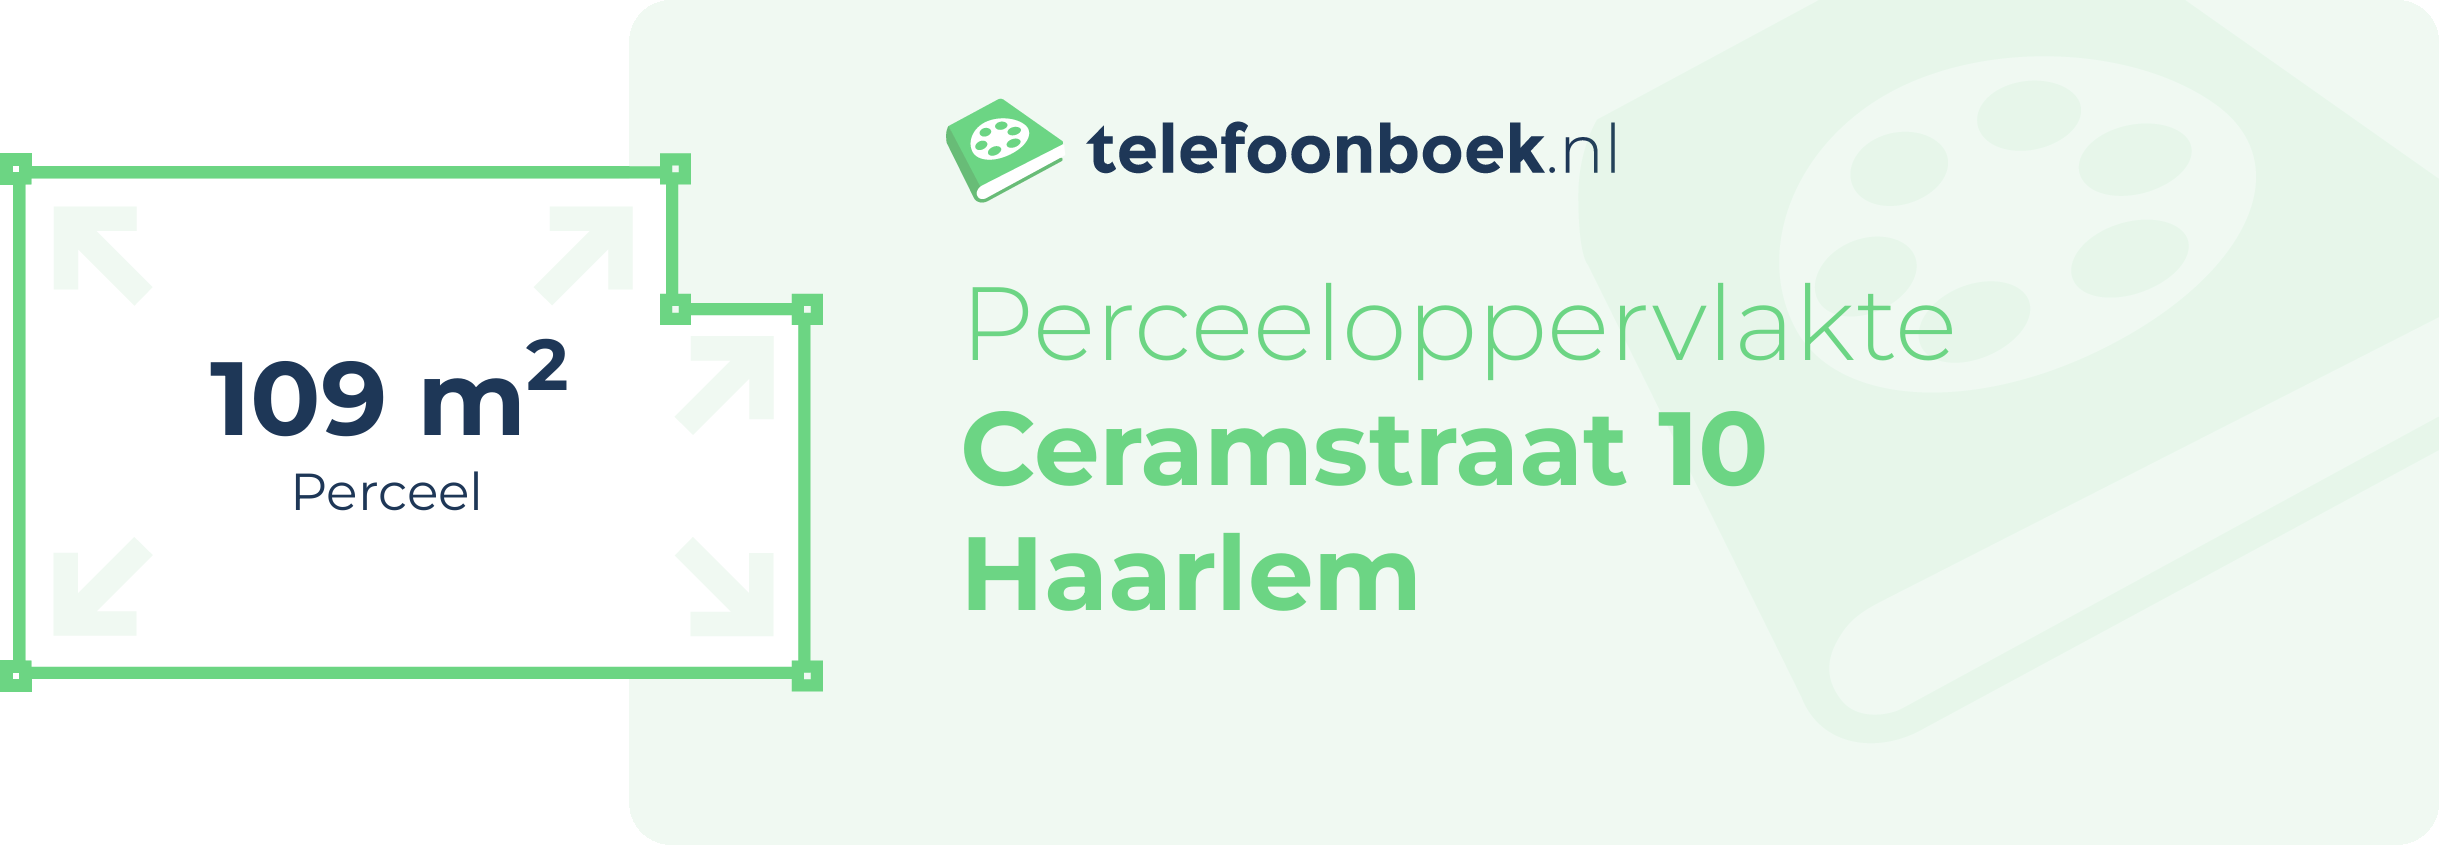 Perceeloppervlakte Ceramstraat 10 Haarlem